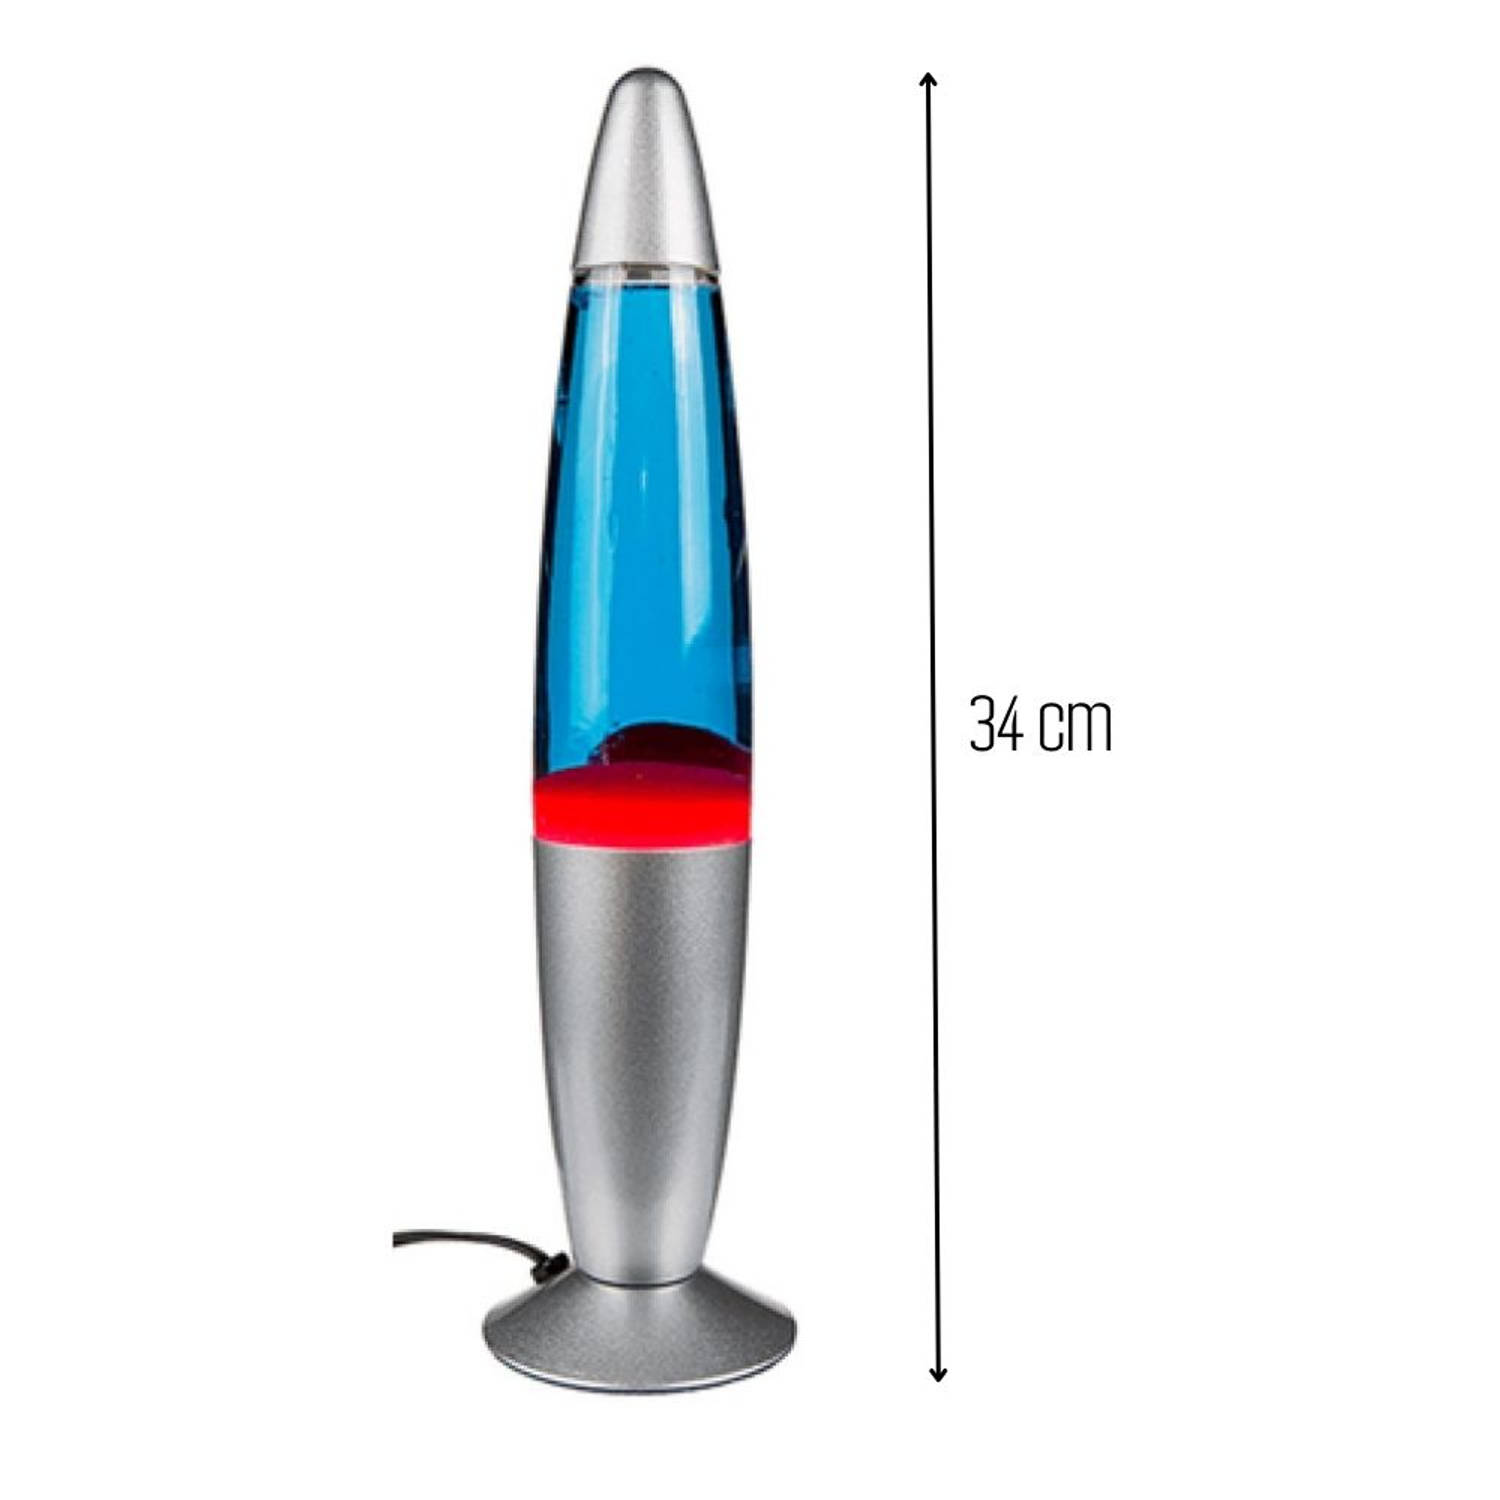 Interpretatief Tegenstrijdigheid krab Orange85 Lavalamp - voor Kinderen - Rood Blauw - Raketvorm - 20W - 34 cm -  met Stekker | Blokker